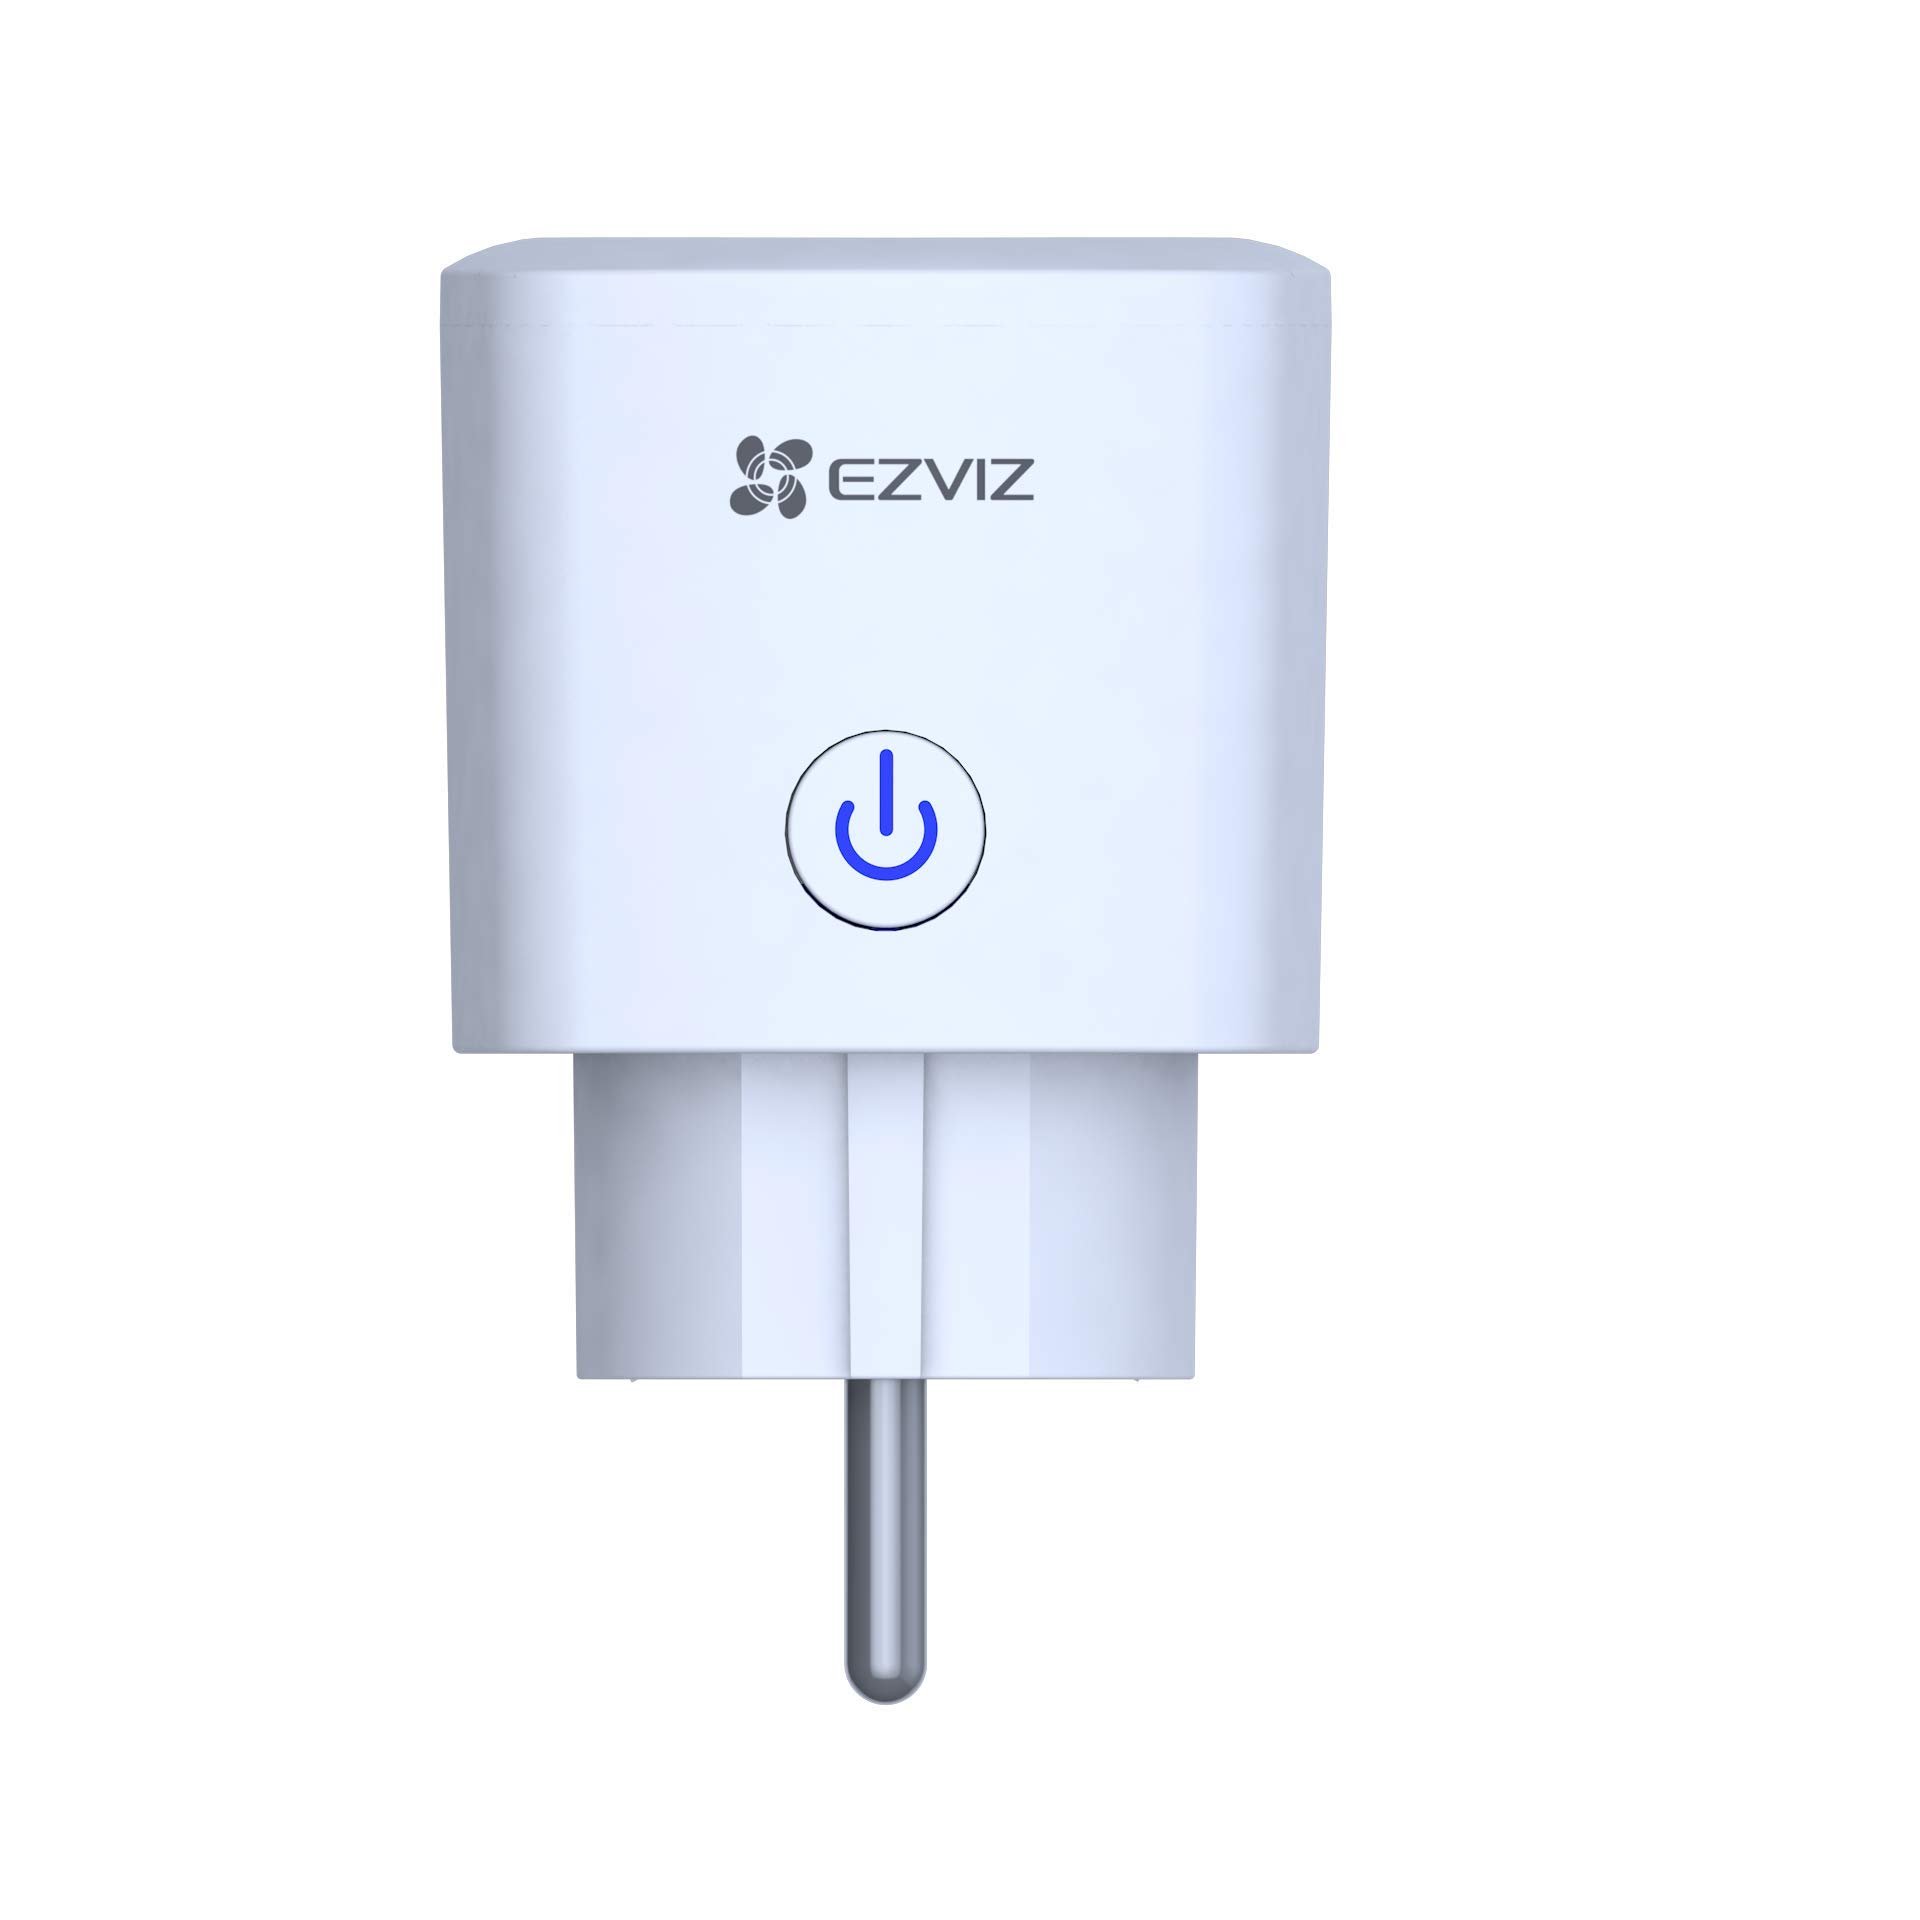 EZVIZ T30 WLAN Smart Plug mit Fernbedienung, Mini Size Smart Plug ohne Hub, funktioniert mit Mobilgeräten, kompatibel mit Alexa, Amazon Echo und Google Home, T30-B, weiß